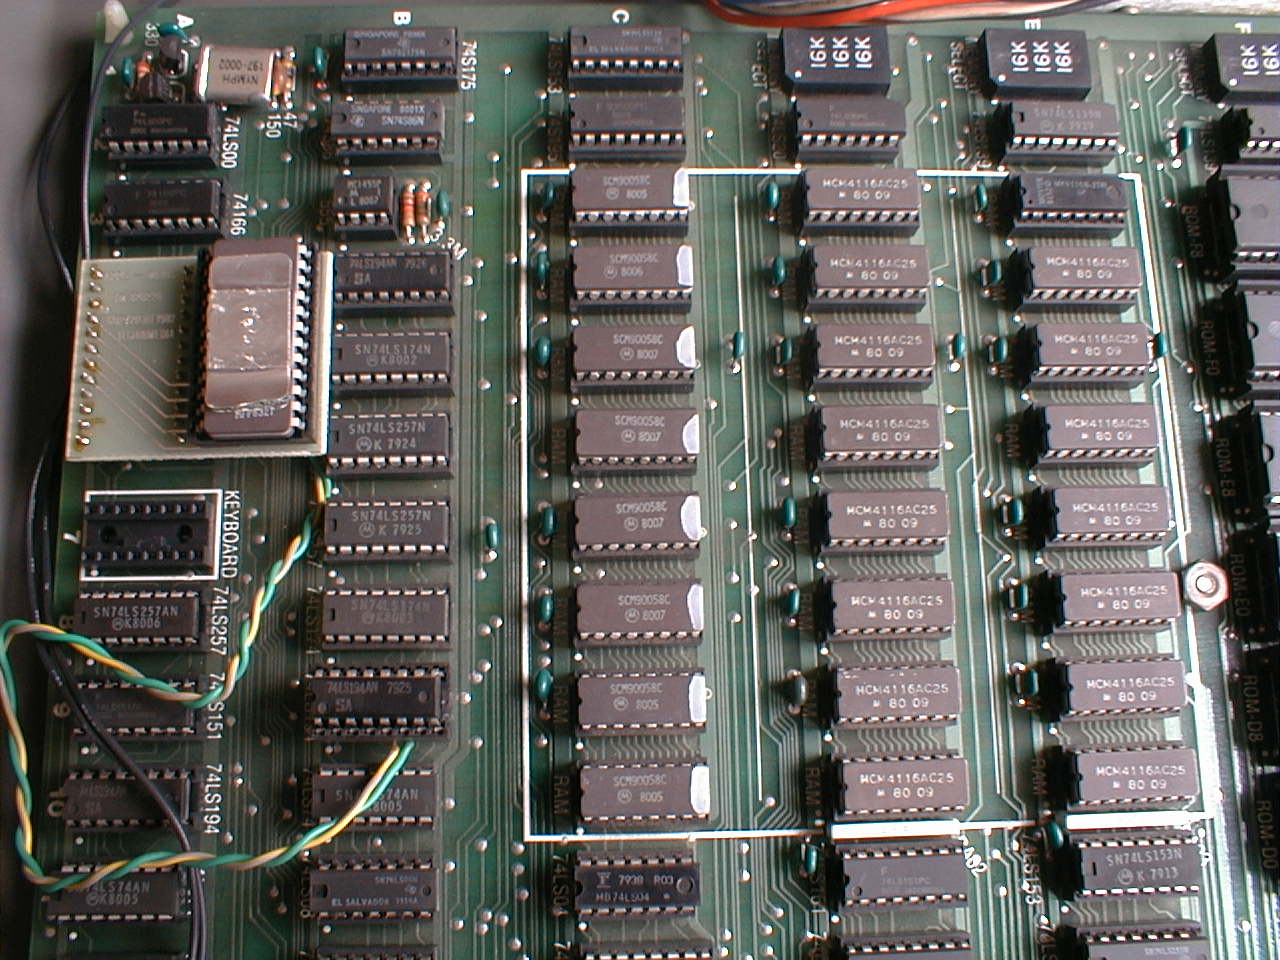 Apple II Europlus